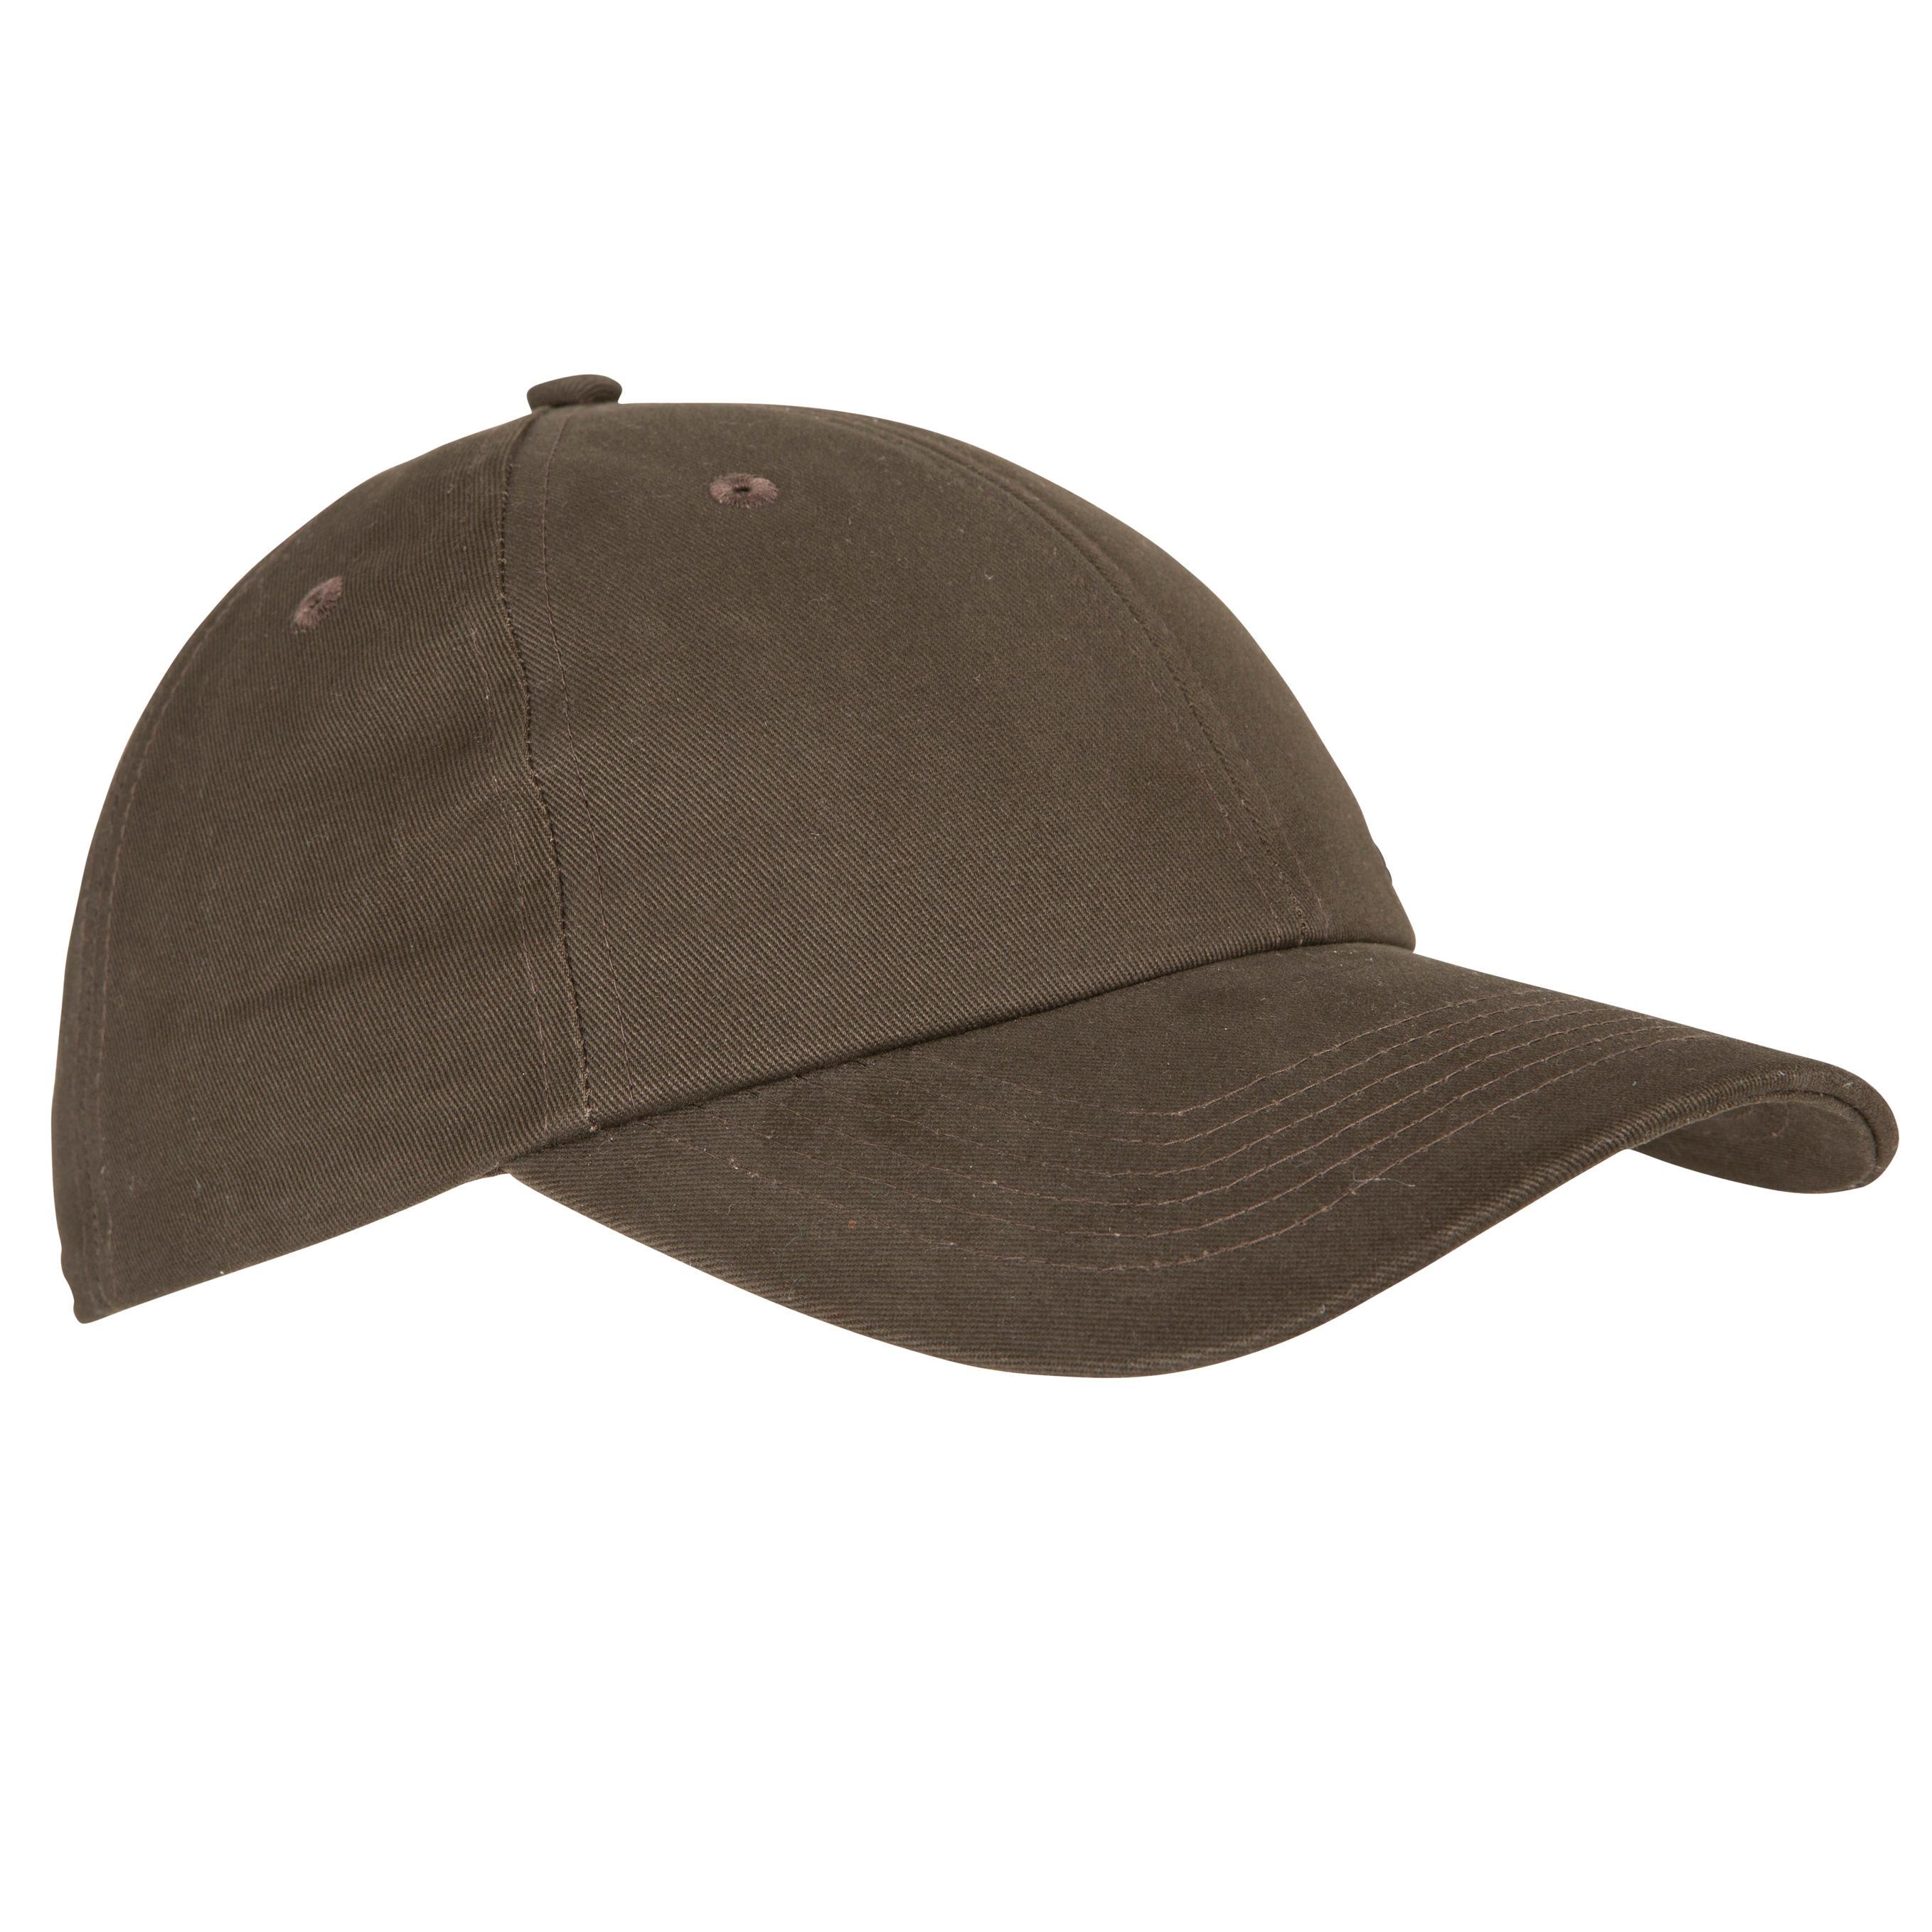 [ด่วน!! โปรโมชั่นมีจำนวนจำกัด] หมวกสำหรับการส่องสัตว์รุ่น STEPPE 100 (สีน้ำตาล) สำหรับ ล่าสัตว์